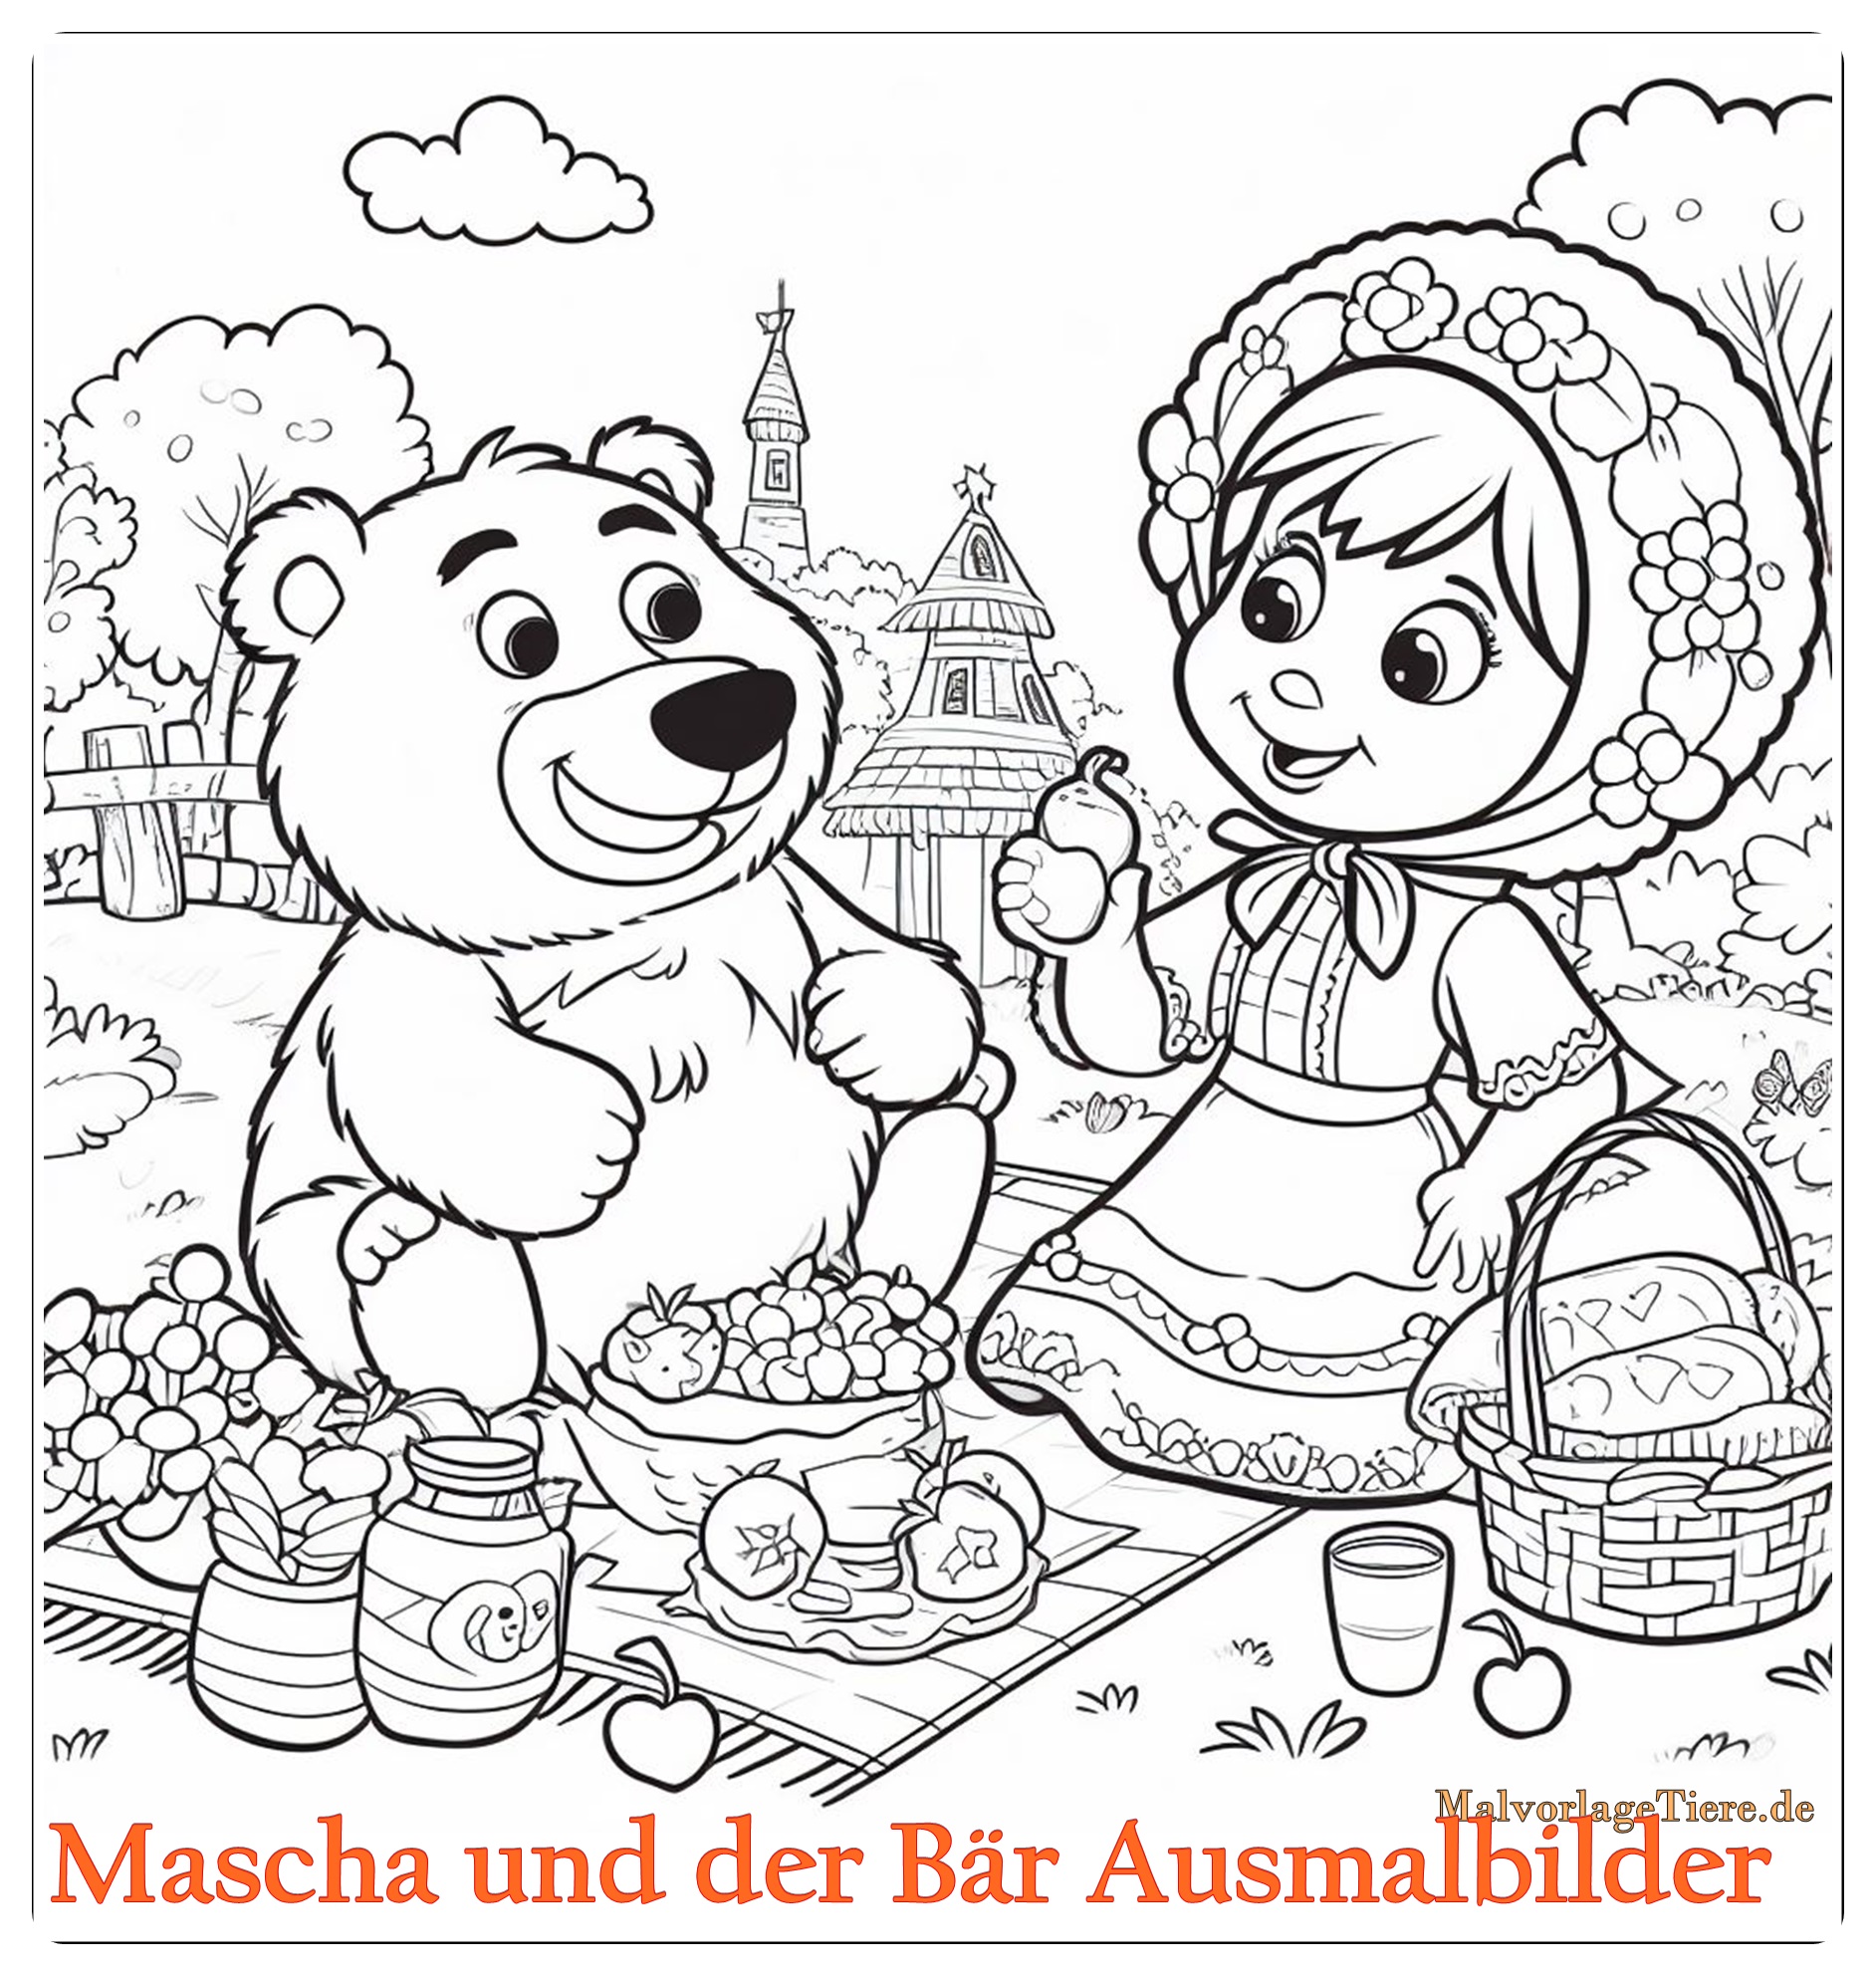 Mascha und der Bär Ausmalbilder 04 by malvorlagetiere.de